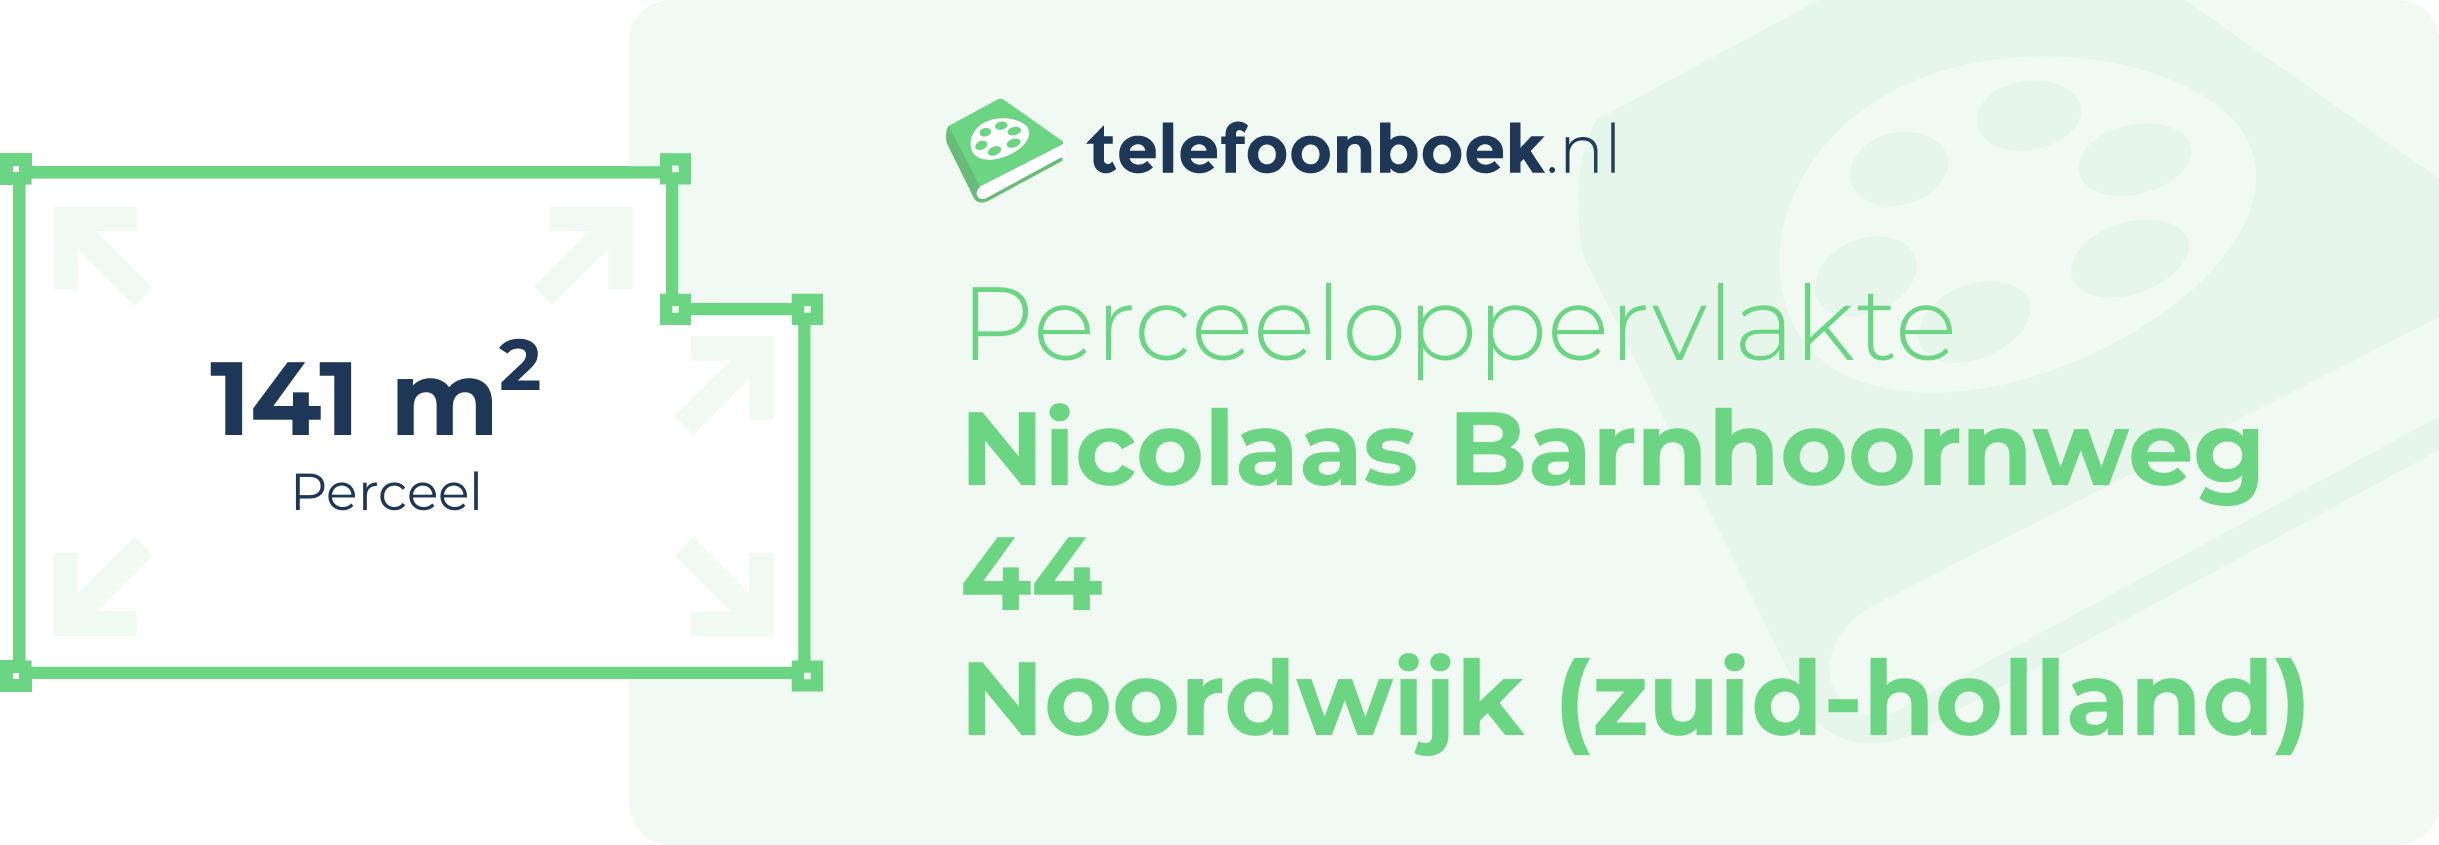 Perceeloppervlakte Nicolaas Barnhoornweg 44 Noordwijk (Zuid-Holland)